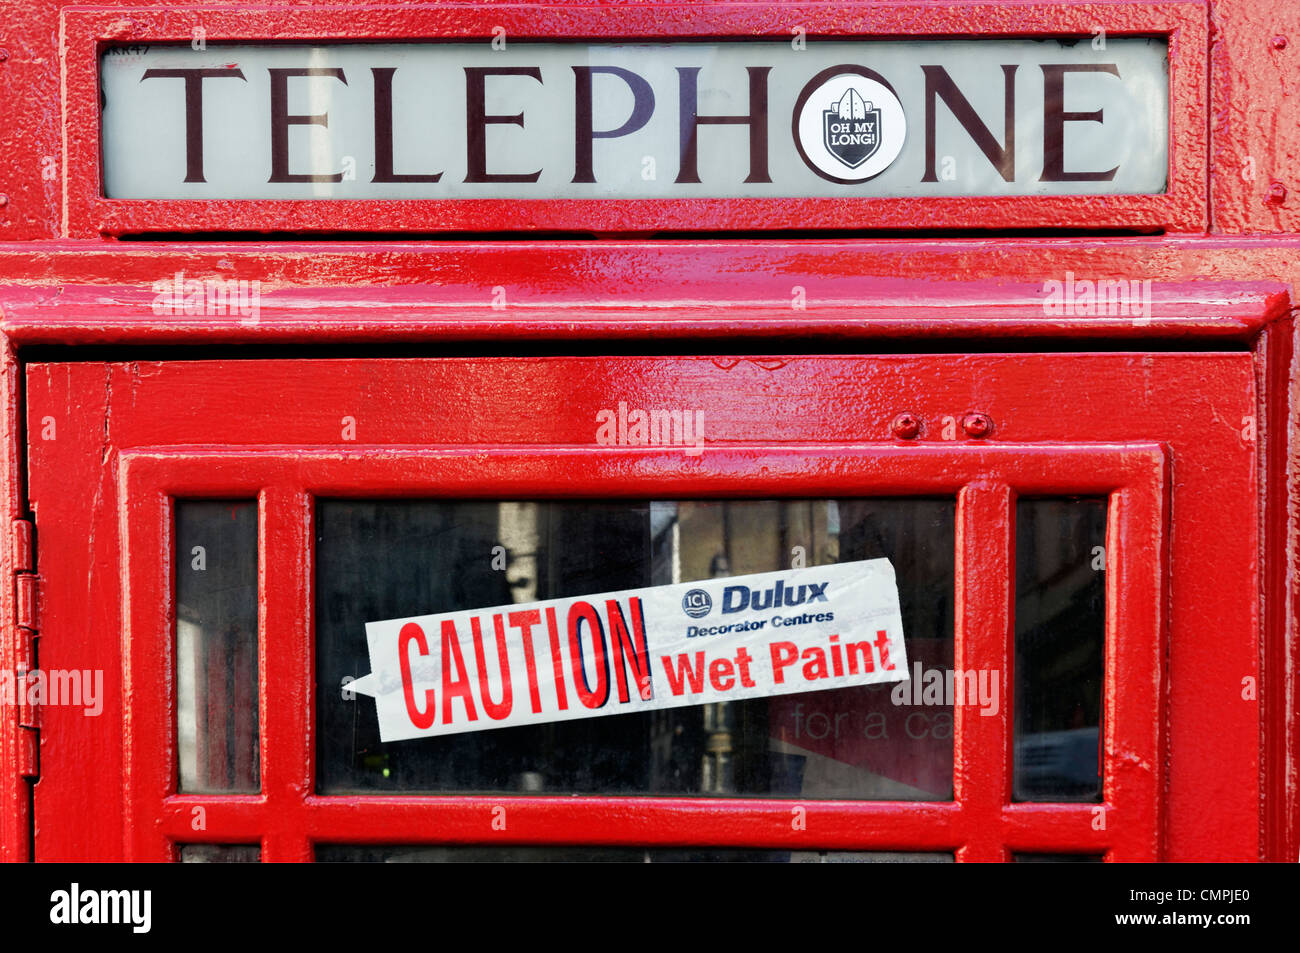 Une cabine téléphonique publique rouge avec une "attention - wet paint' dans la fenêtre autocollant Banque D'Images